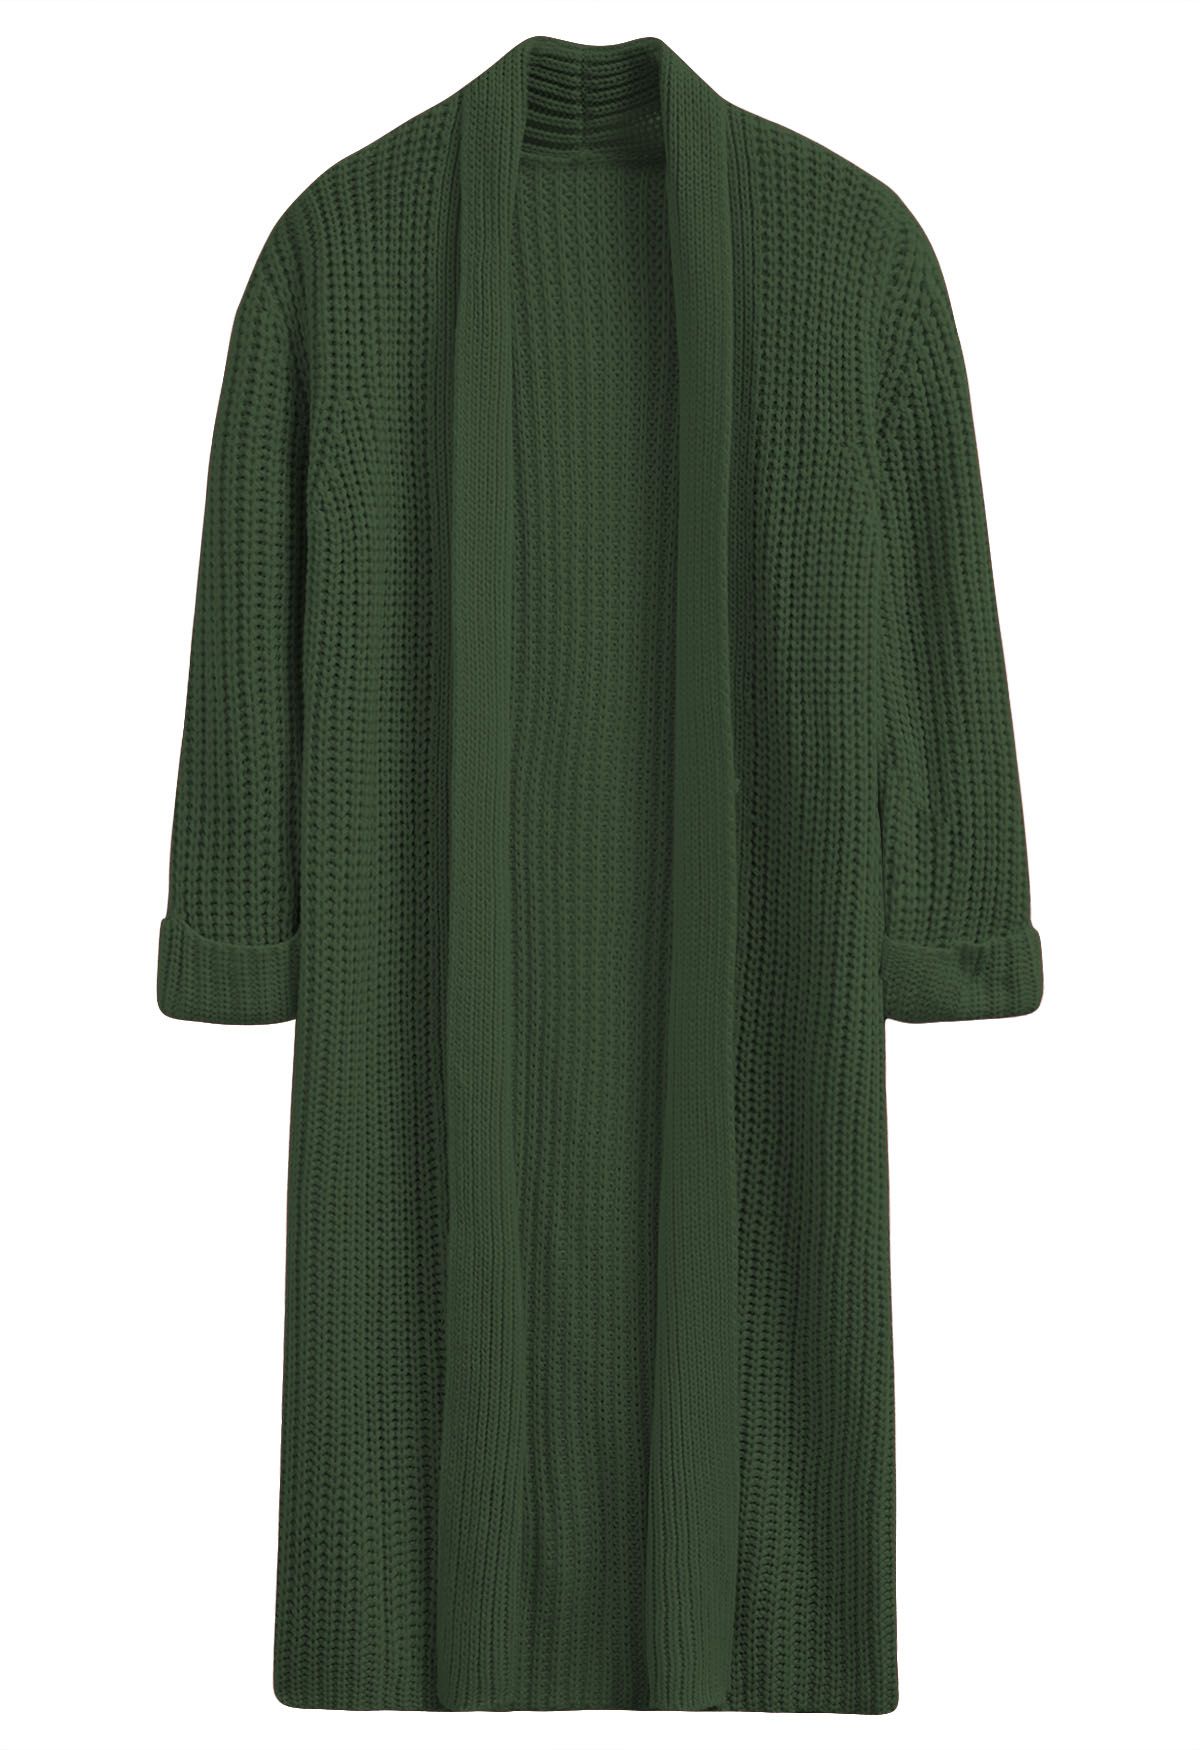 Swanky Open Front Longline Knit Cardigan in Dark Green